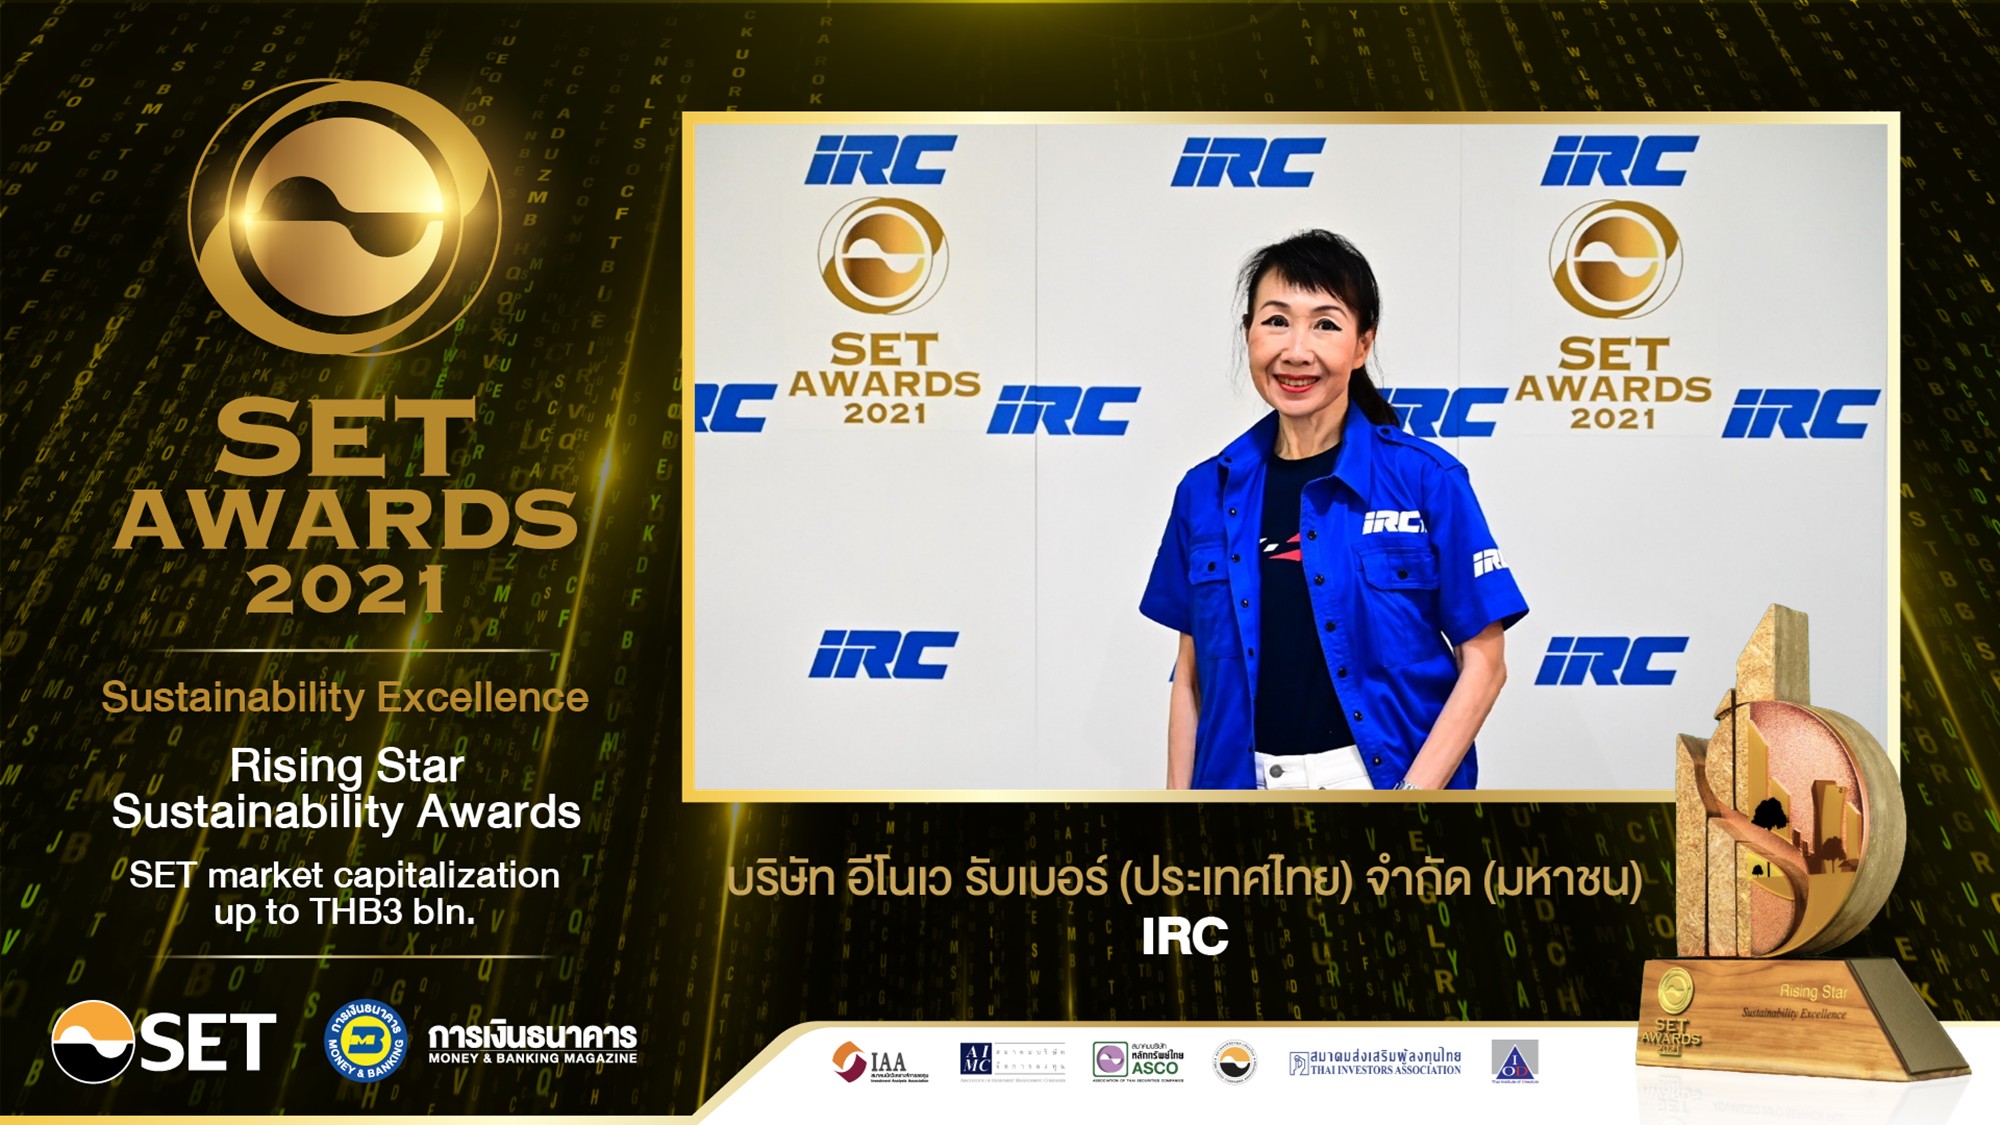 IRC received SET Awards 2021